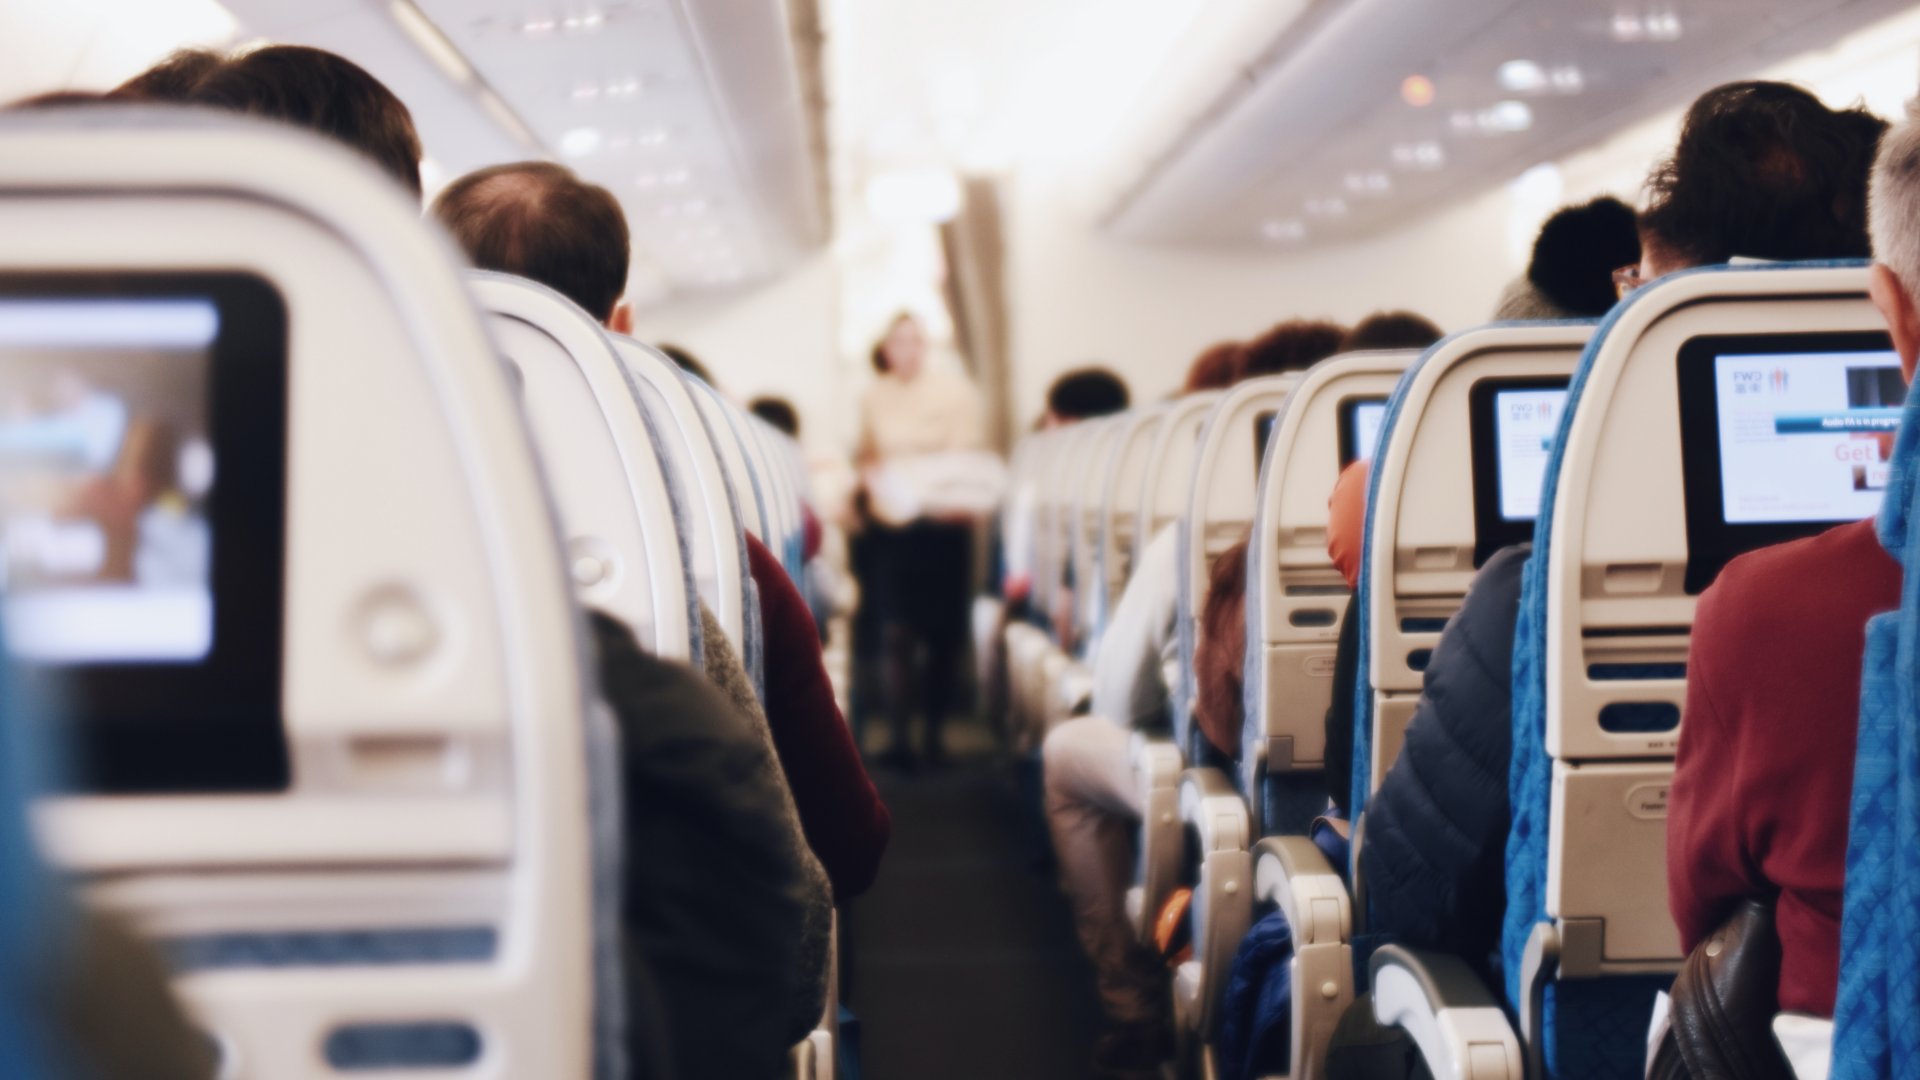 Ülések egy utasszálító repülőn